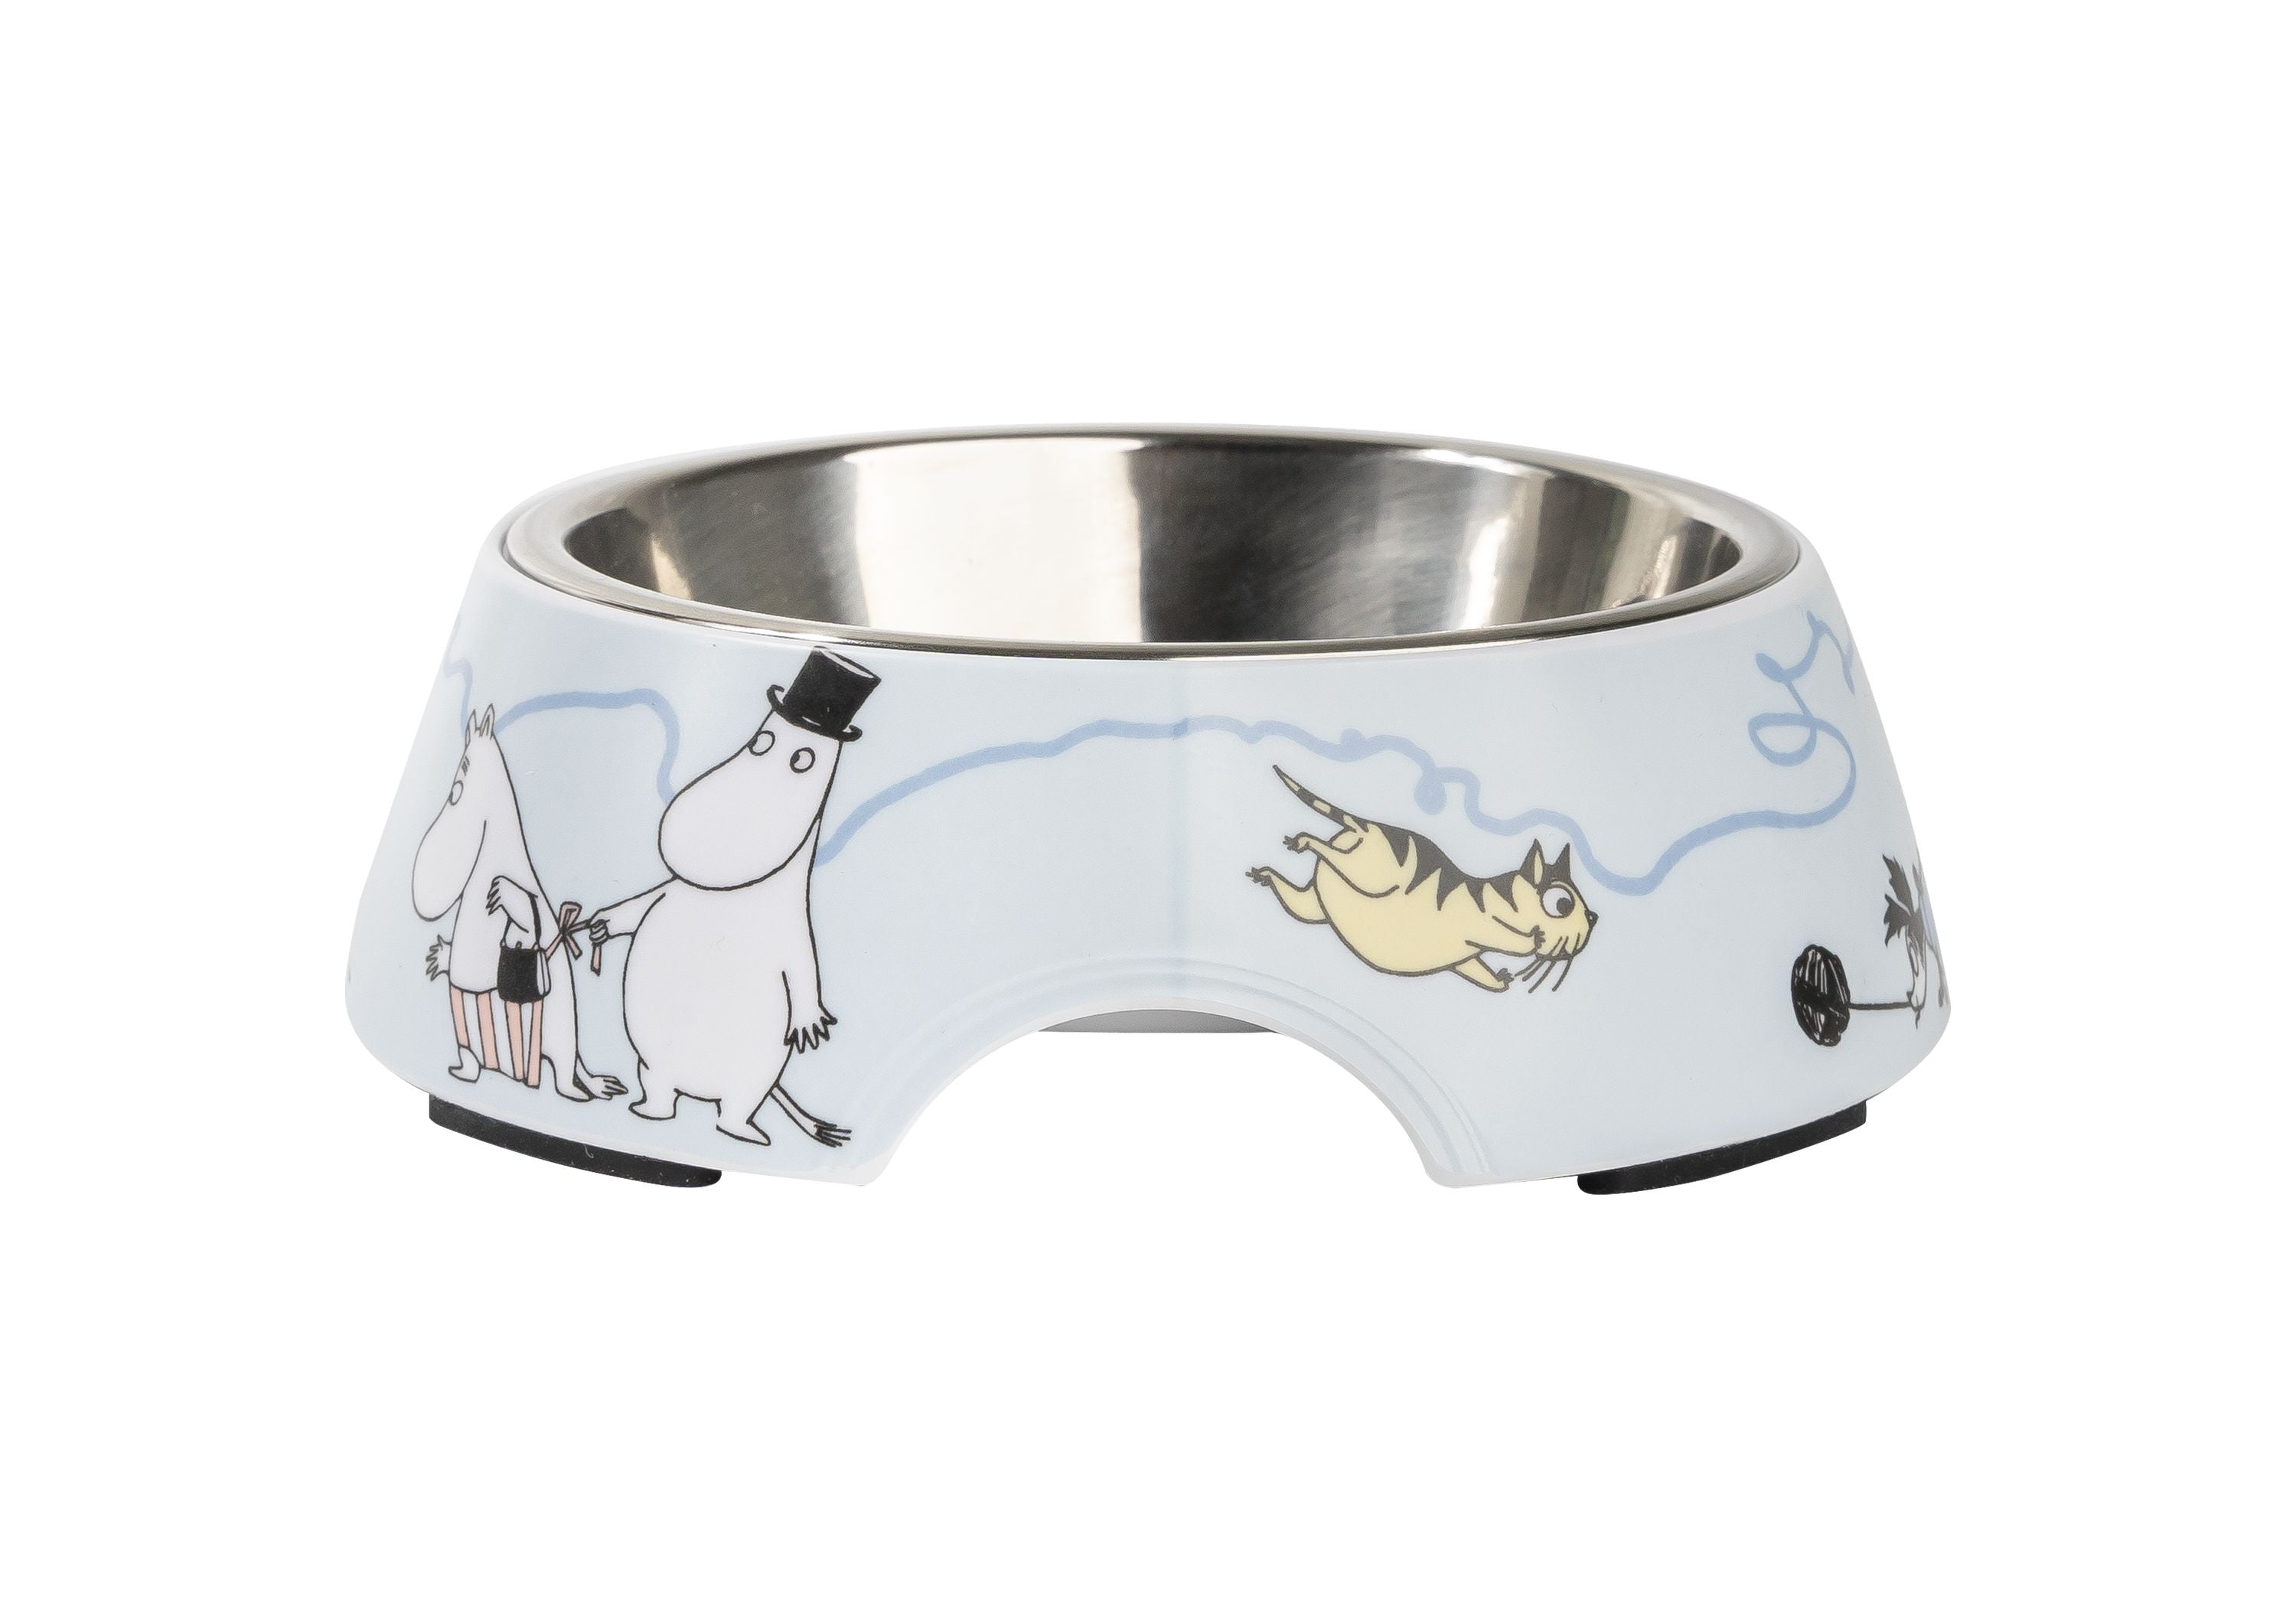 Muurla Moomin Pets Food Bowl S, azul